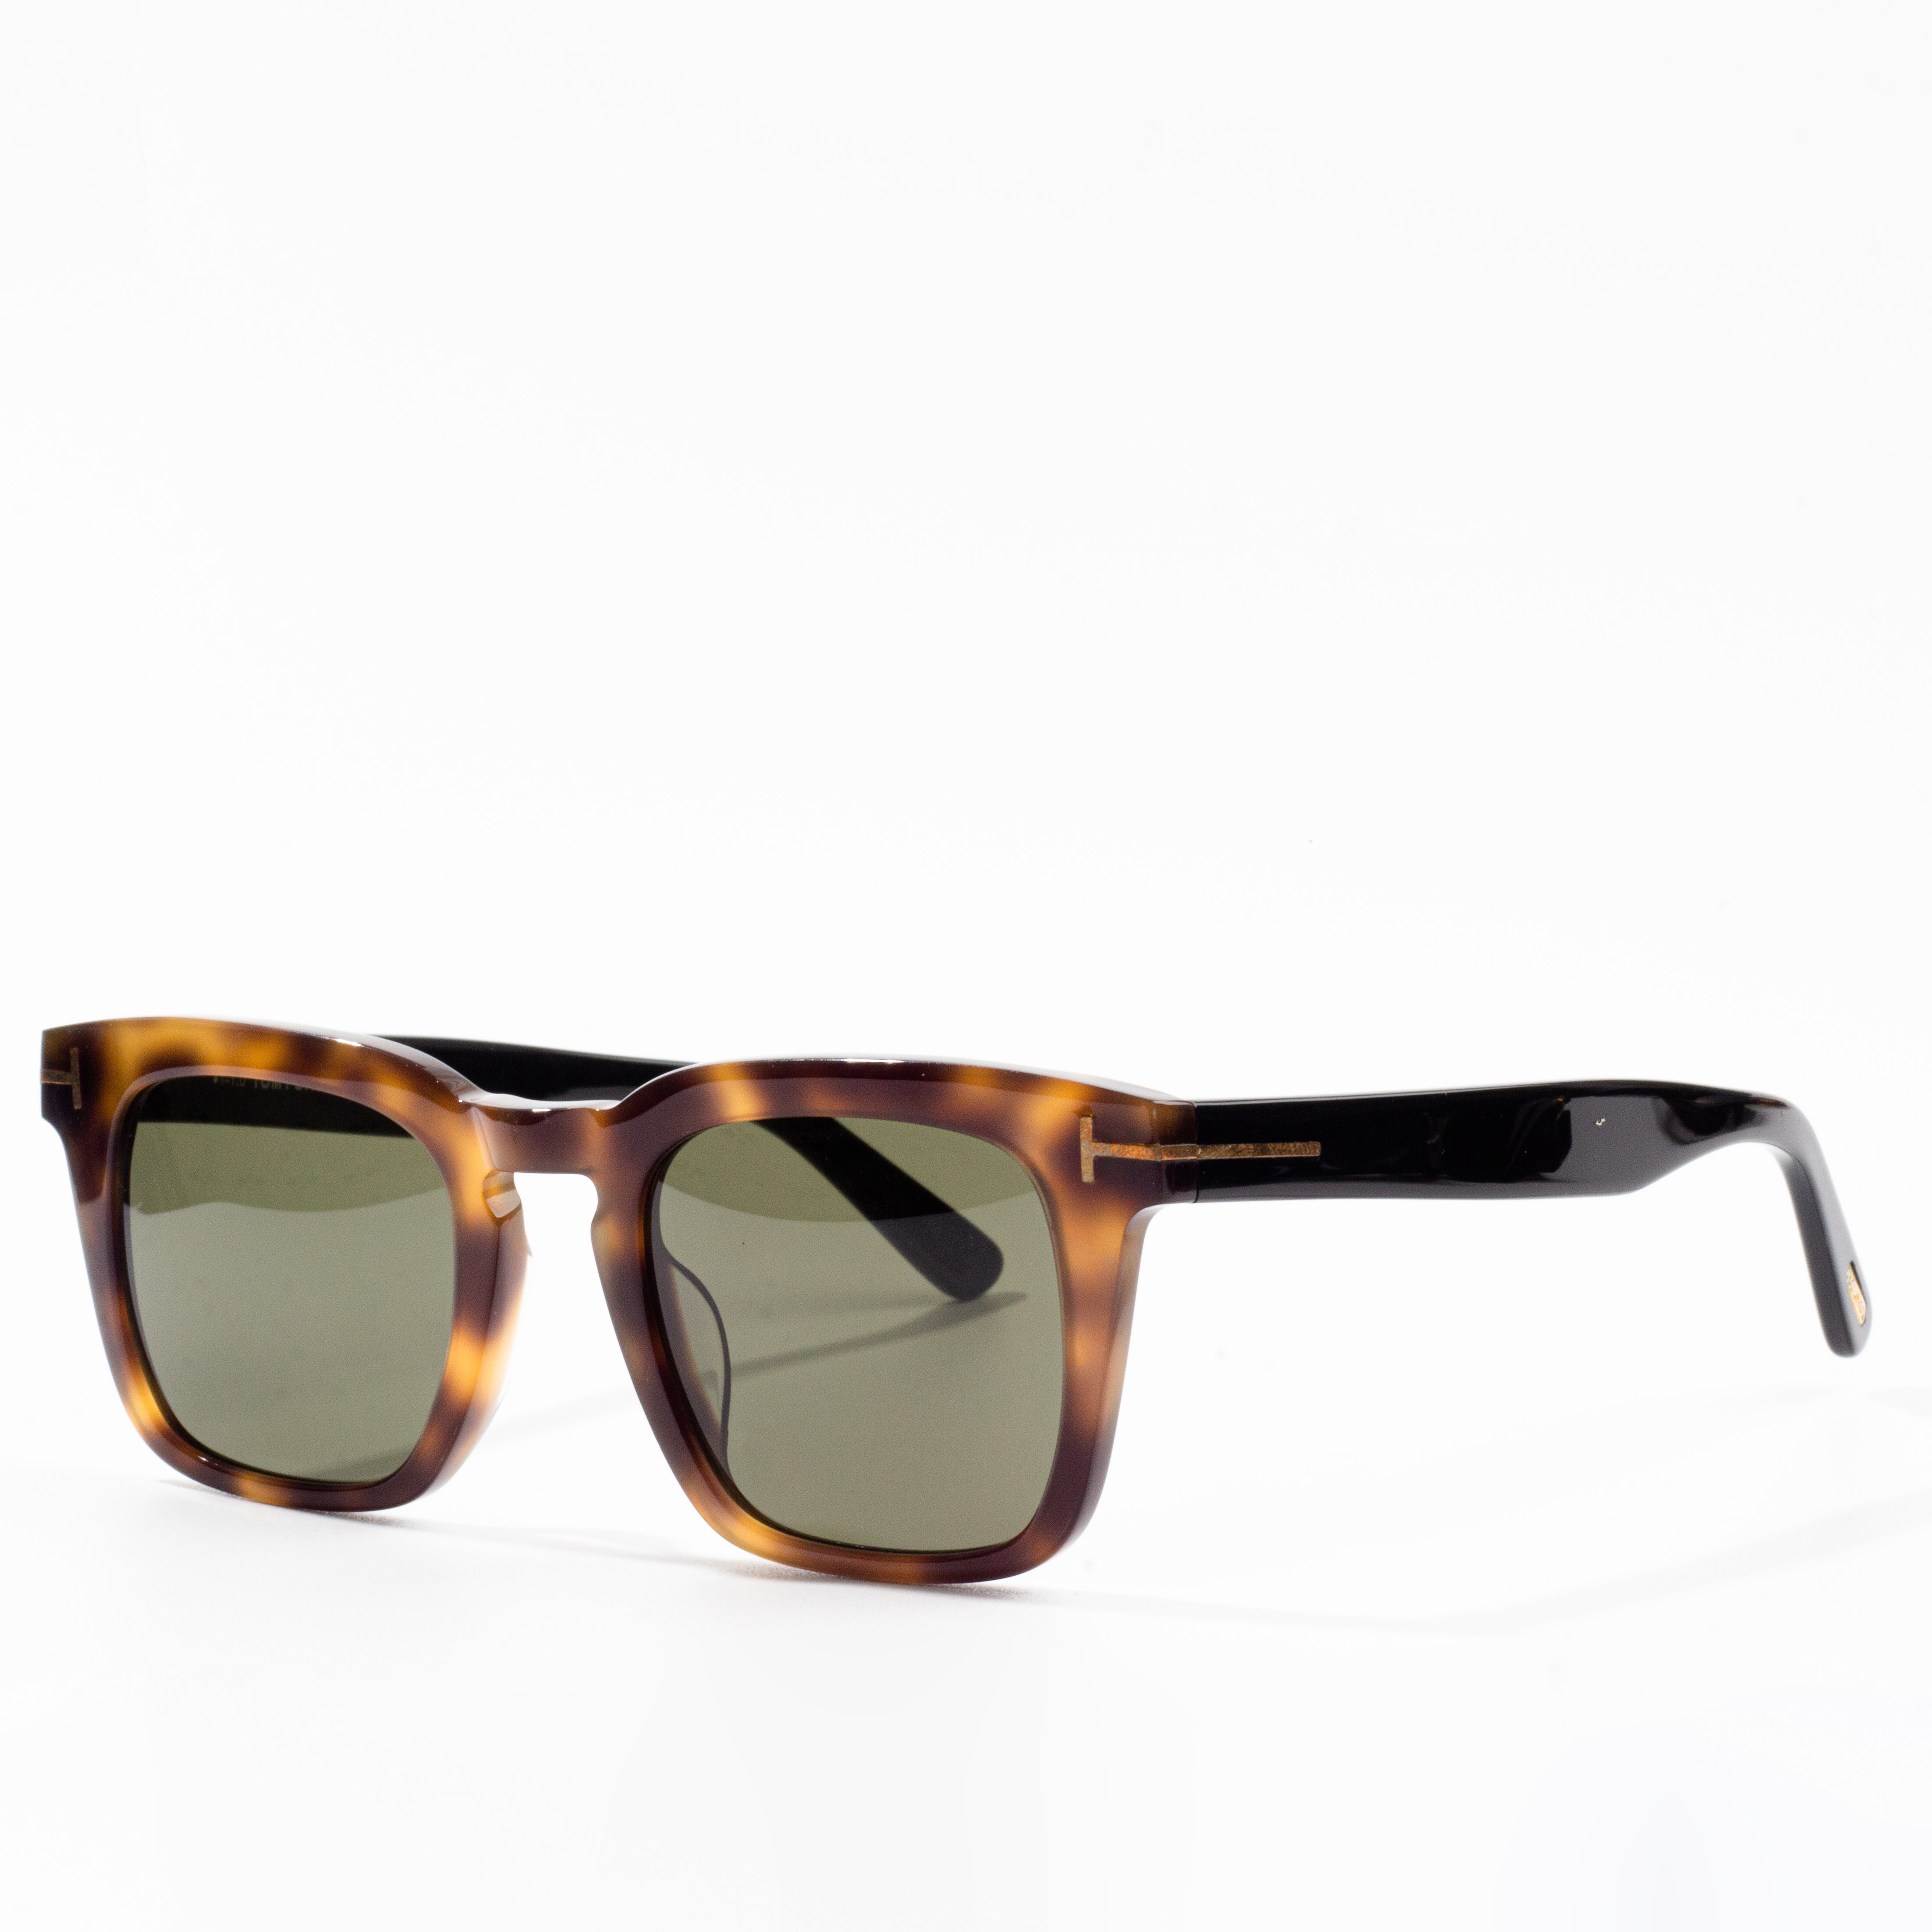 wholesale sunglasses supplier